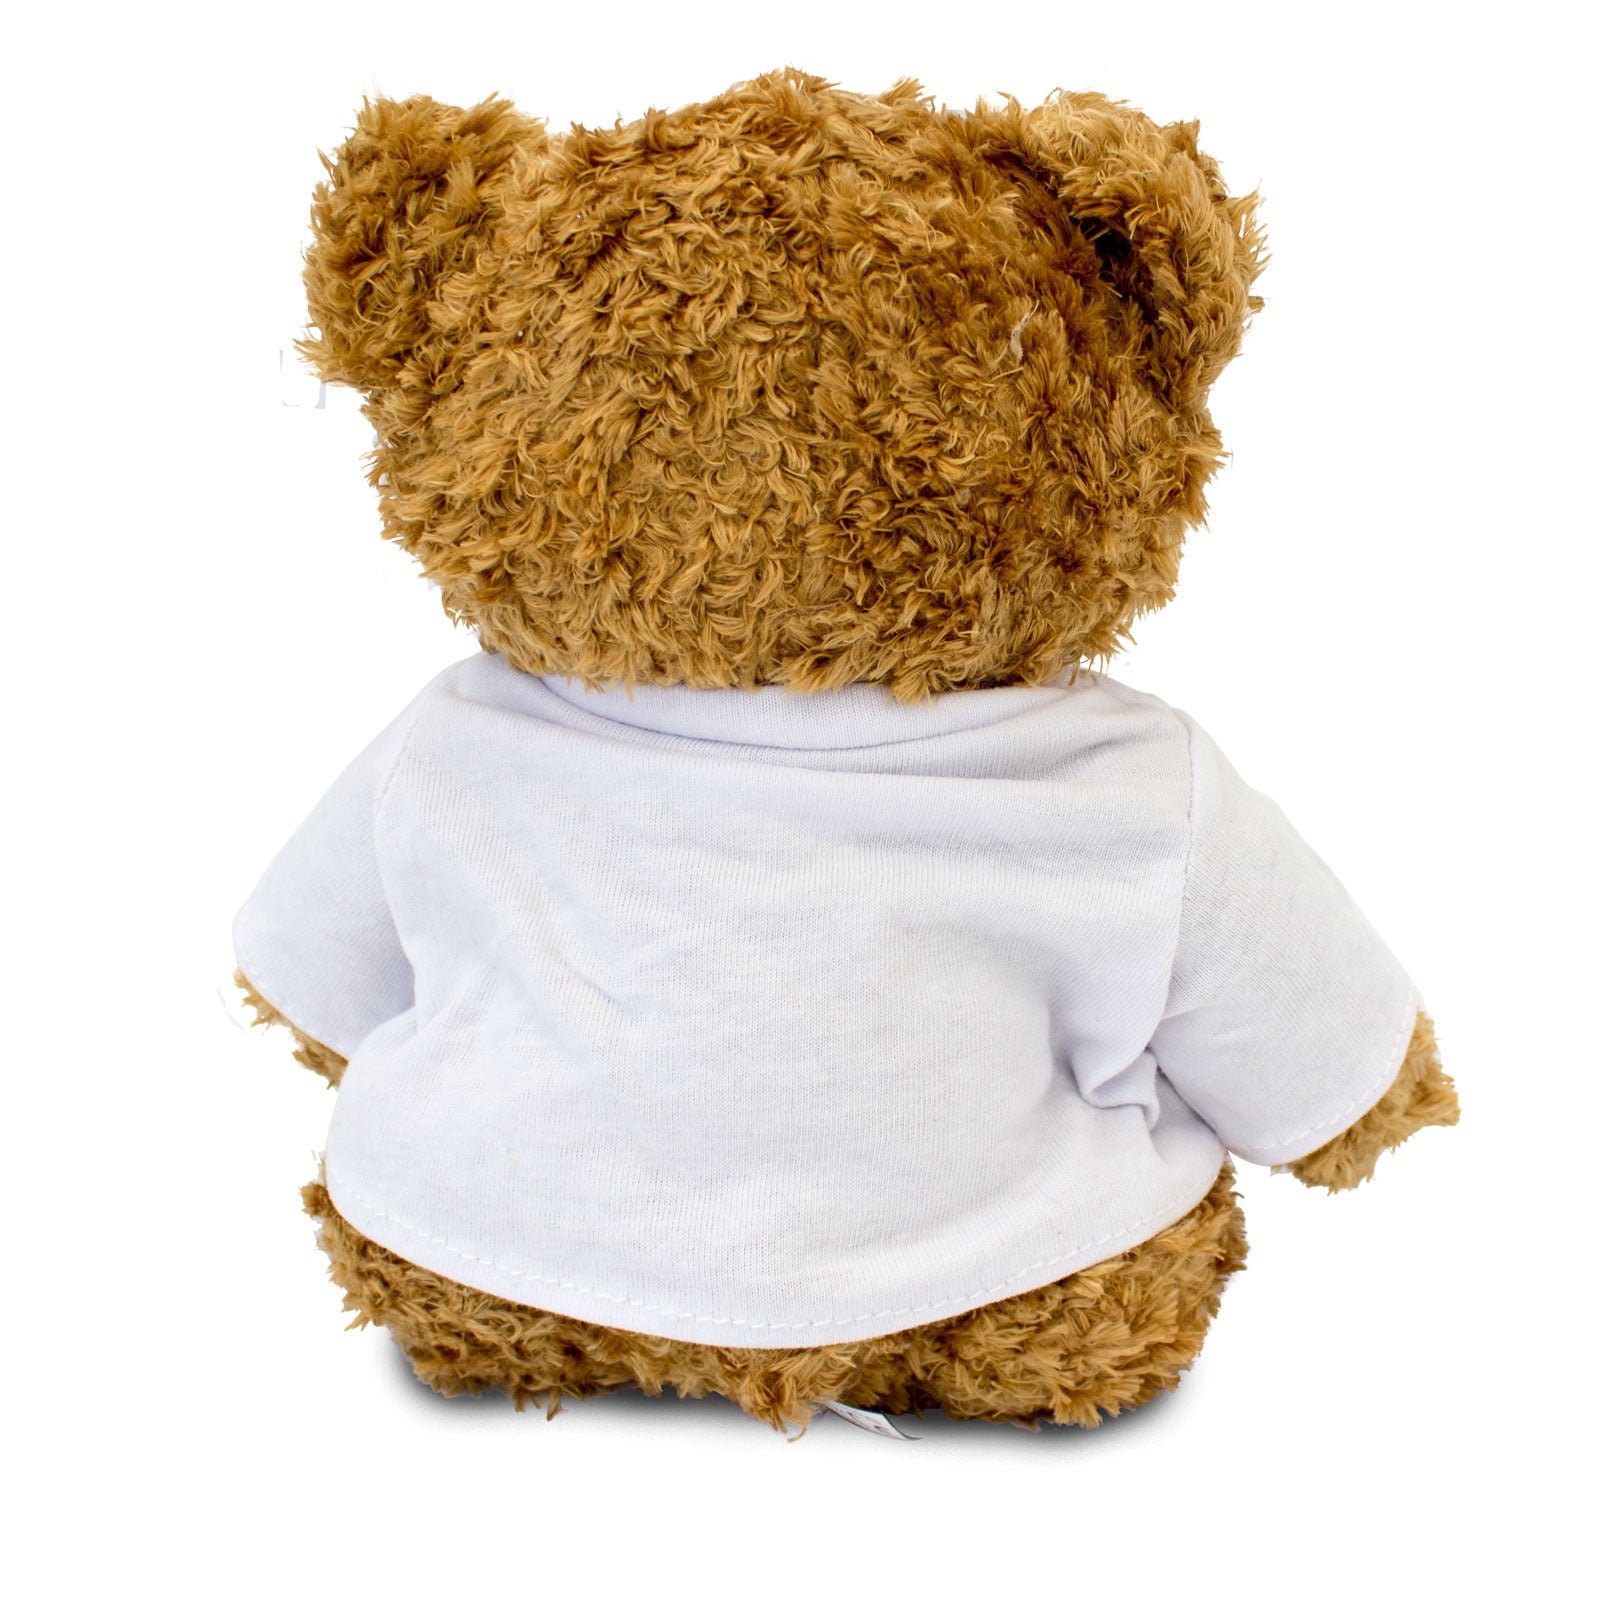 I Love Sienna - Teddy Bear